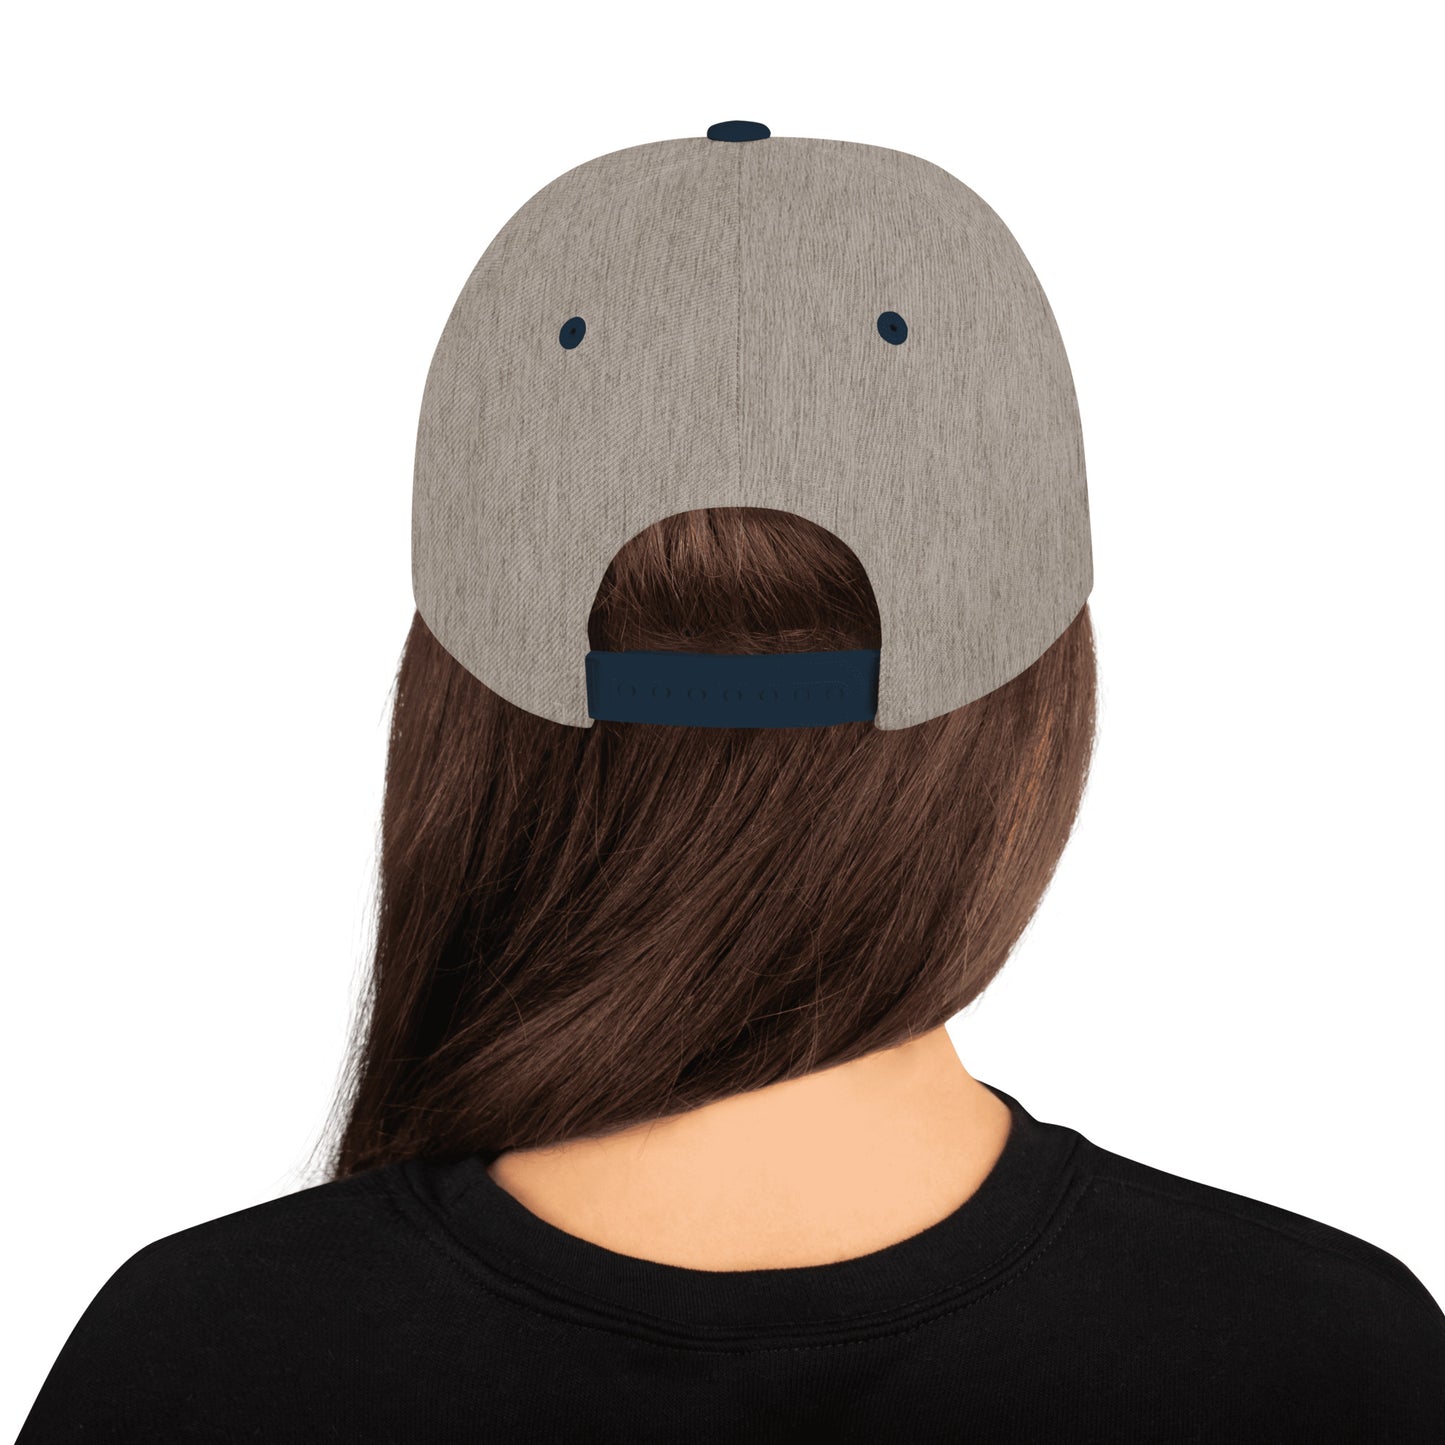 Tejano - Snapback Hat